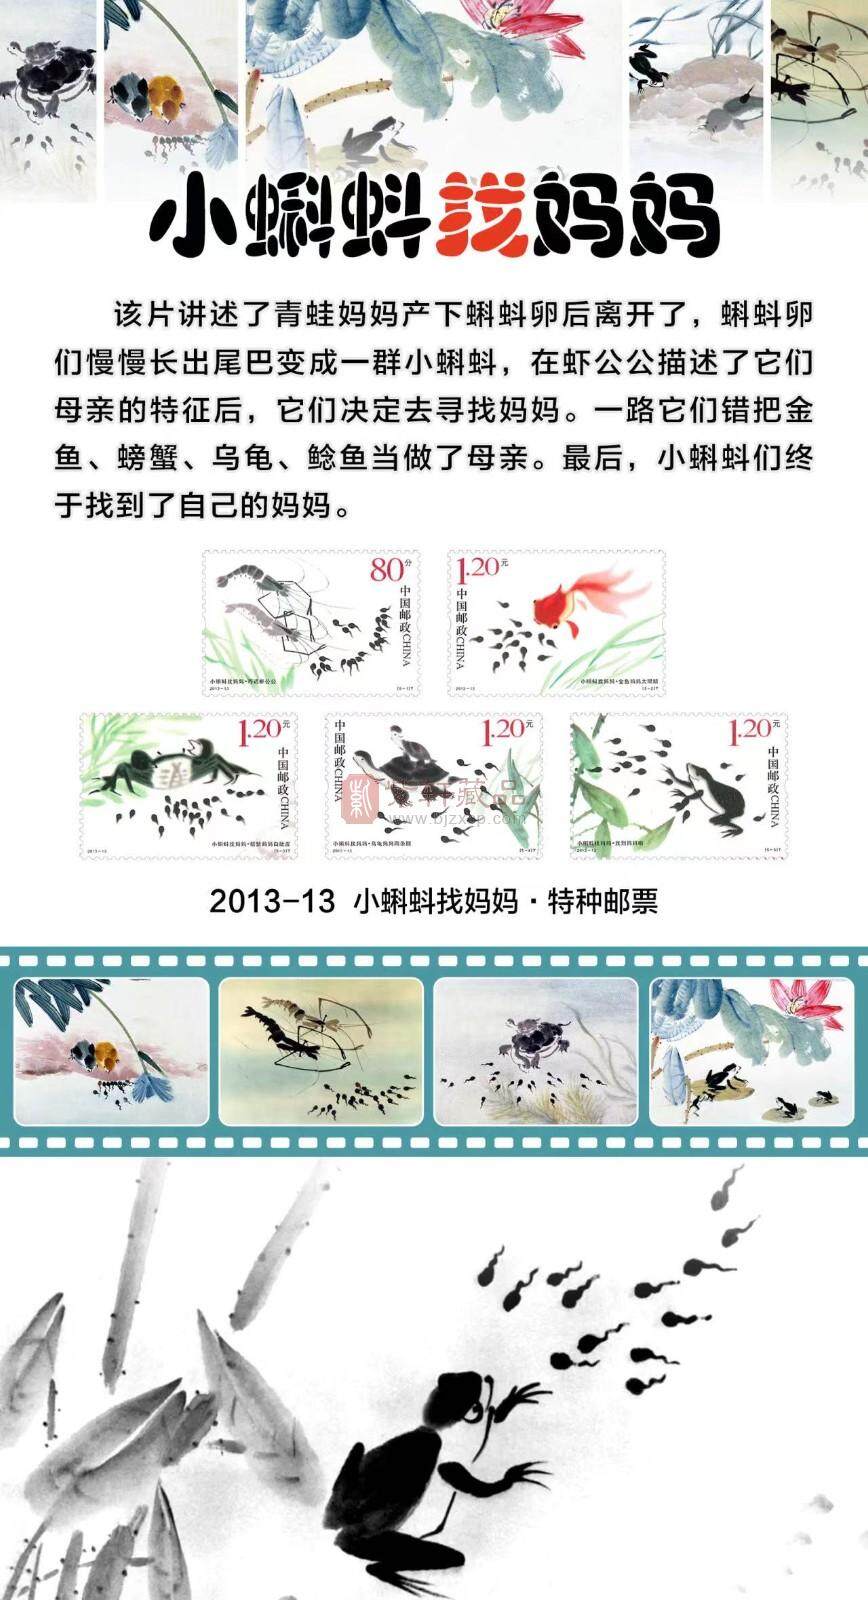 【新品上架】《中国经典动画》邮票珍藏册